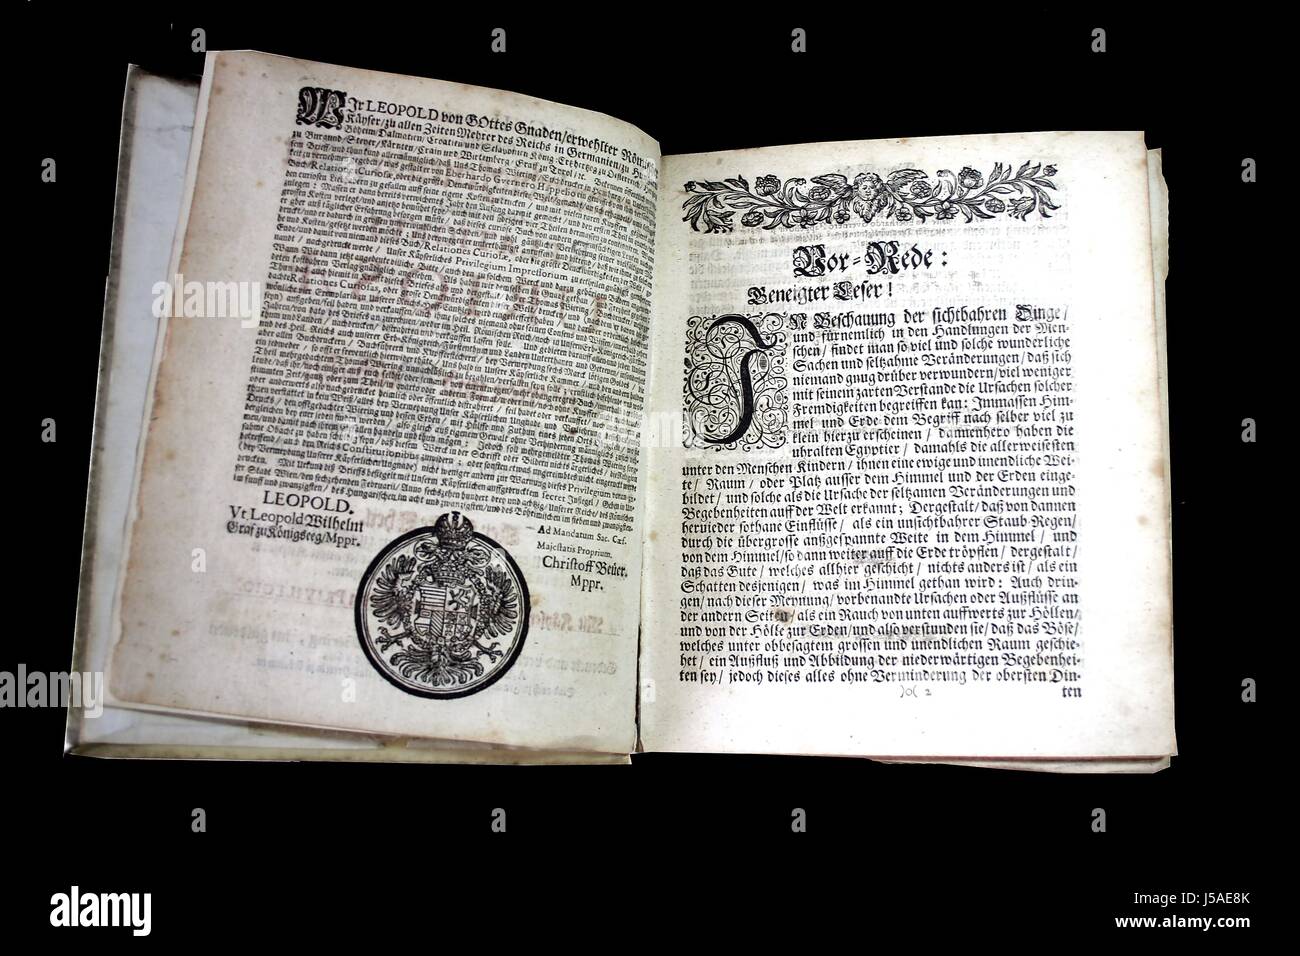 Geschichte Erinnerungsstücke Altes Buch Eghappelii 1691 Historien Merkwrdigketen Kuriositäten Stockfoto